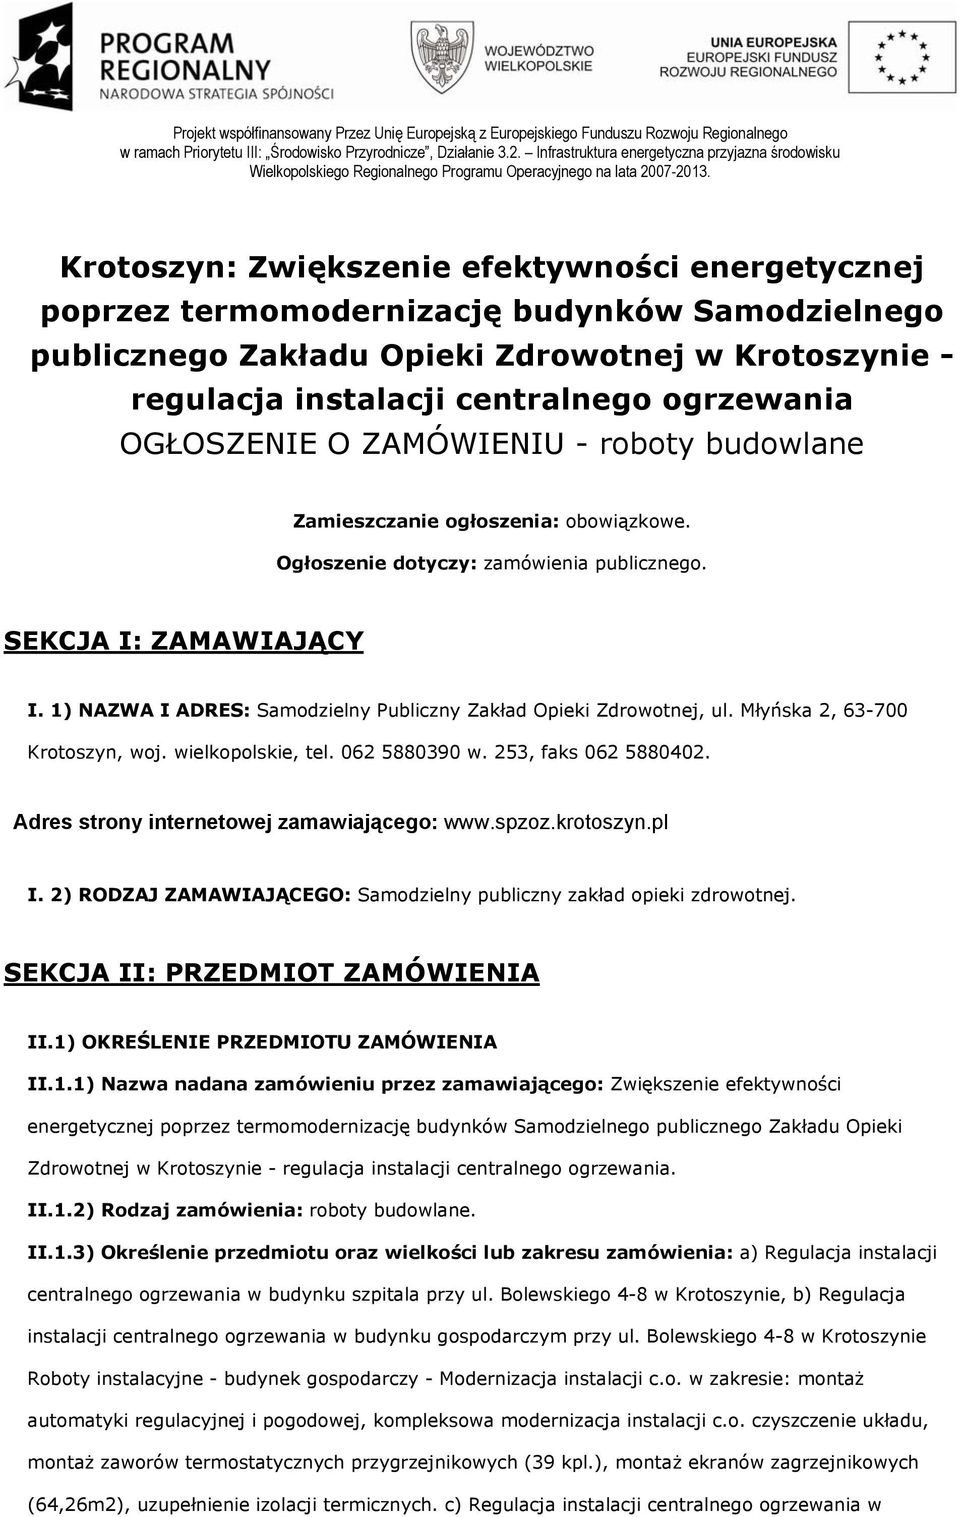 1) NAZWA I ADRES: Samodzielny Publiczny Zakład Opieki Zdrowotnej, ul. Młyńska 2, 63-700 Krotoszyn, woj. wielkopolskie, tel. 062 5880390 w. 253, faks 062 5880402.